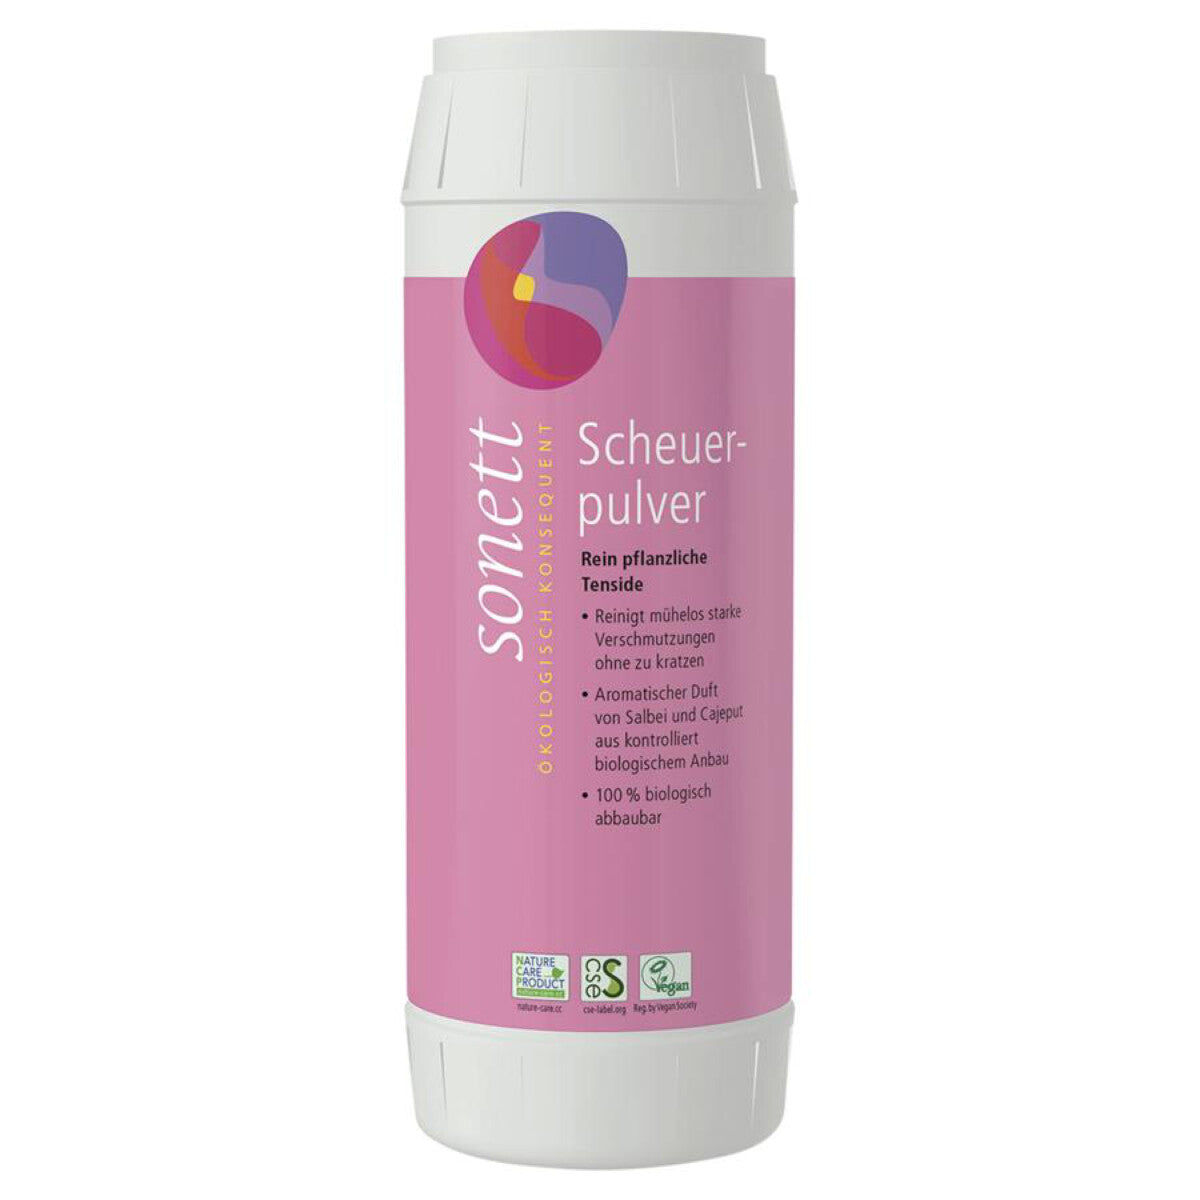 SONETT Scheuerpulver Streudose - 450 g